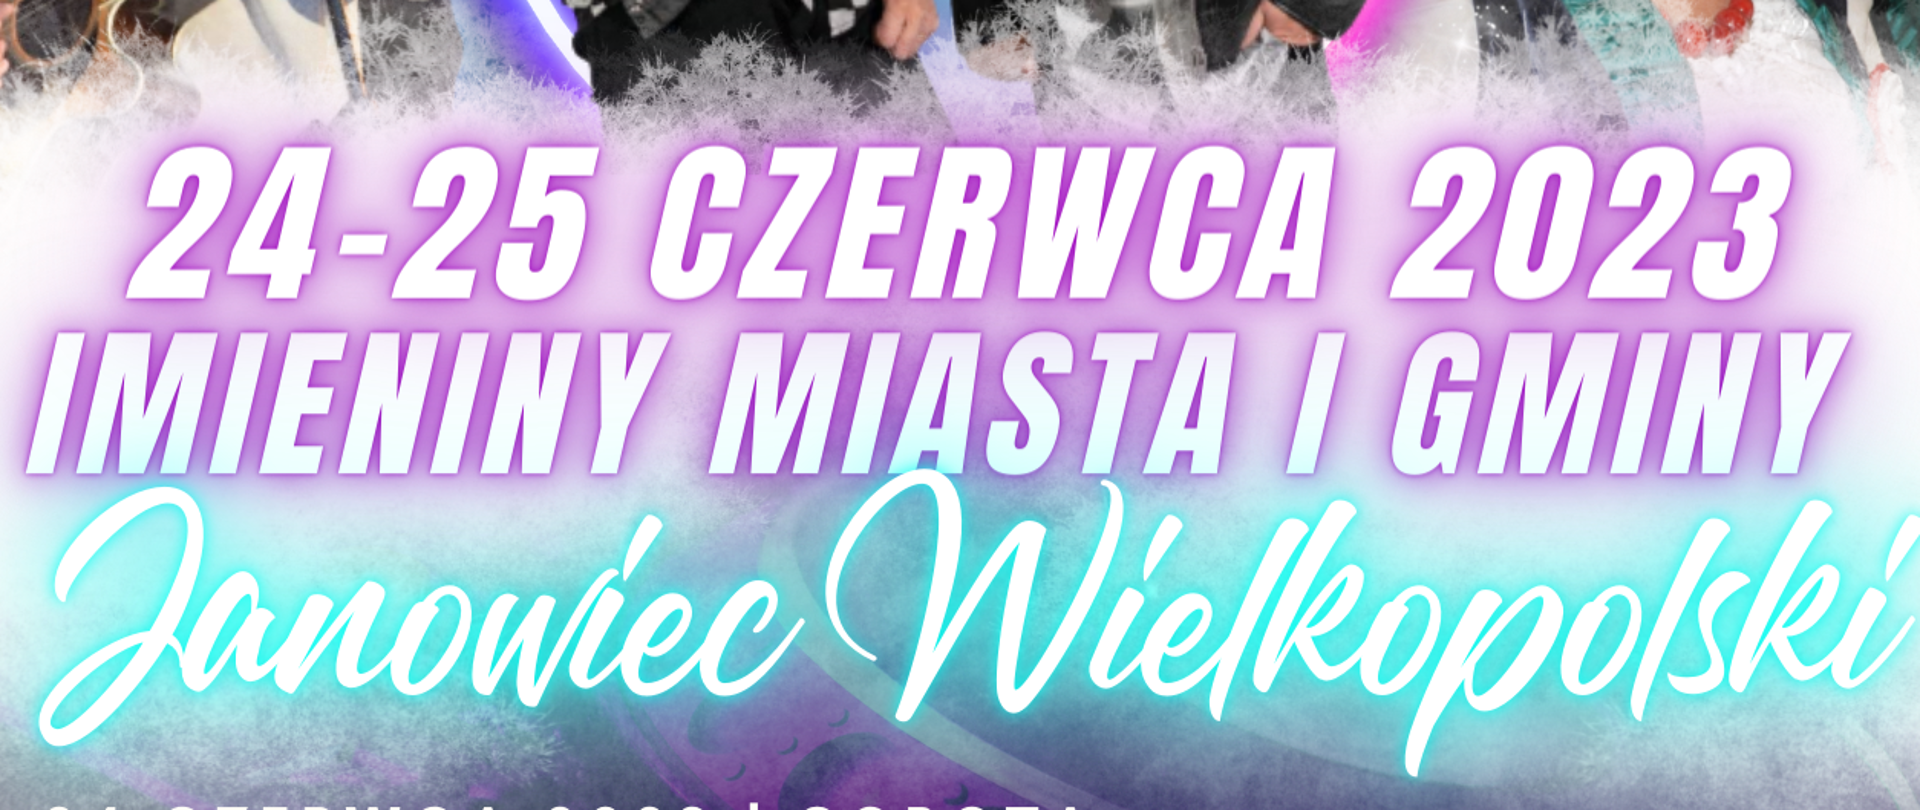 plakat - Imieniny Miasta i Gminy Janowiec Wielkopolski